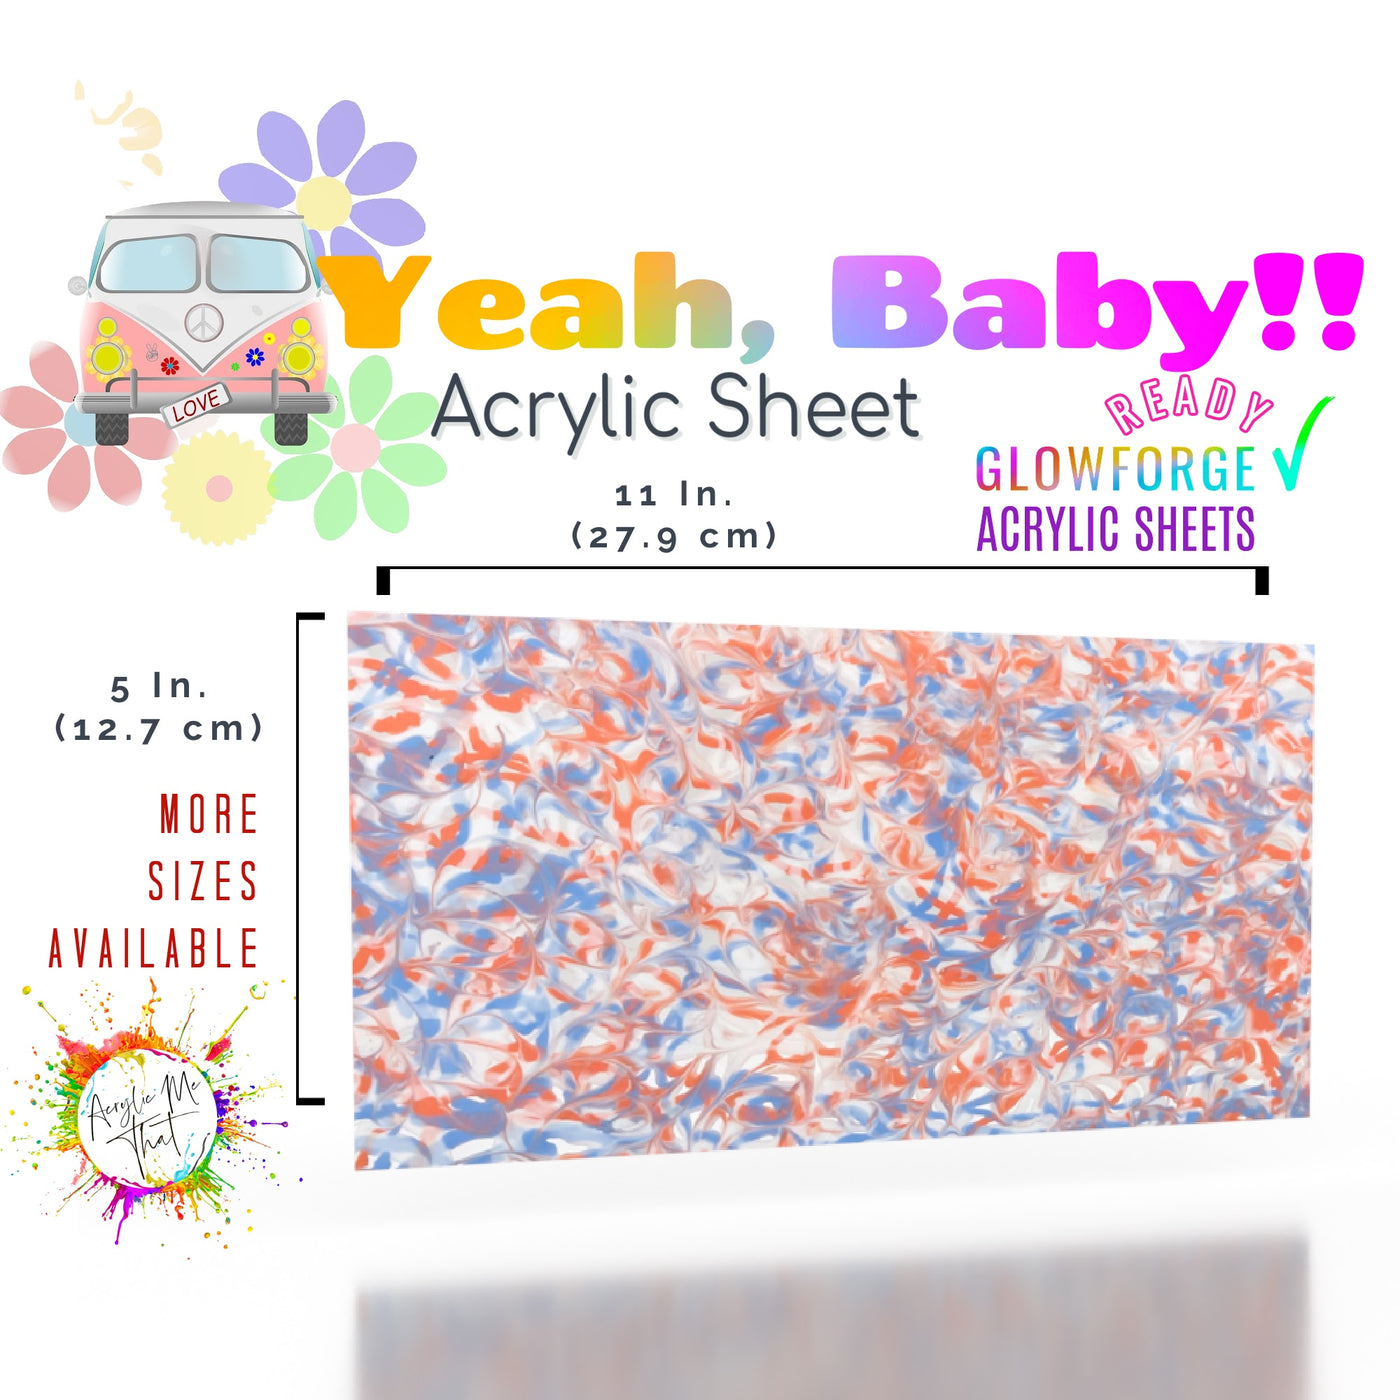 Yeah, Baby!! Acrylic Sheet